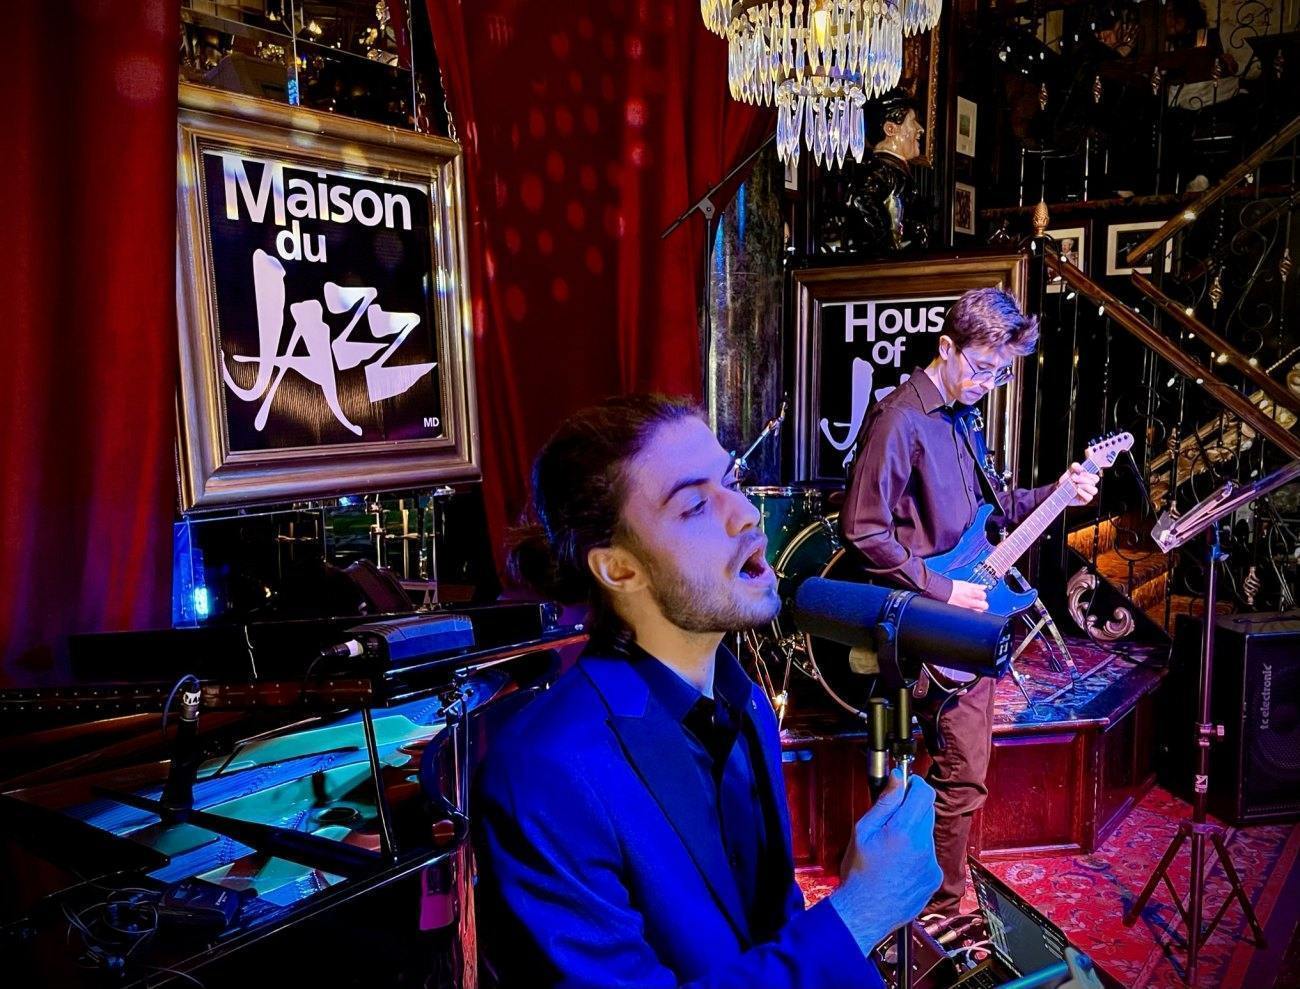 Maison du Jazz / House of Jazz Laval